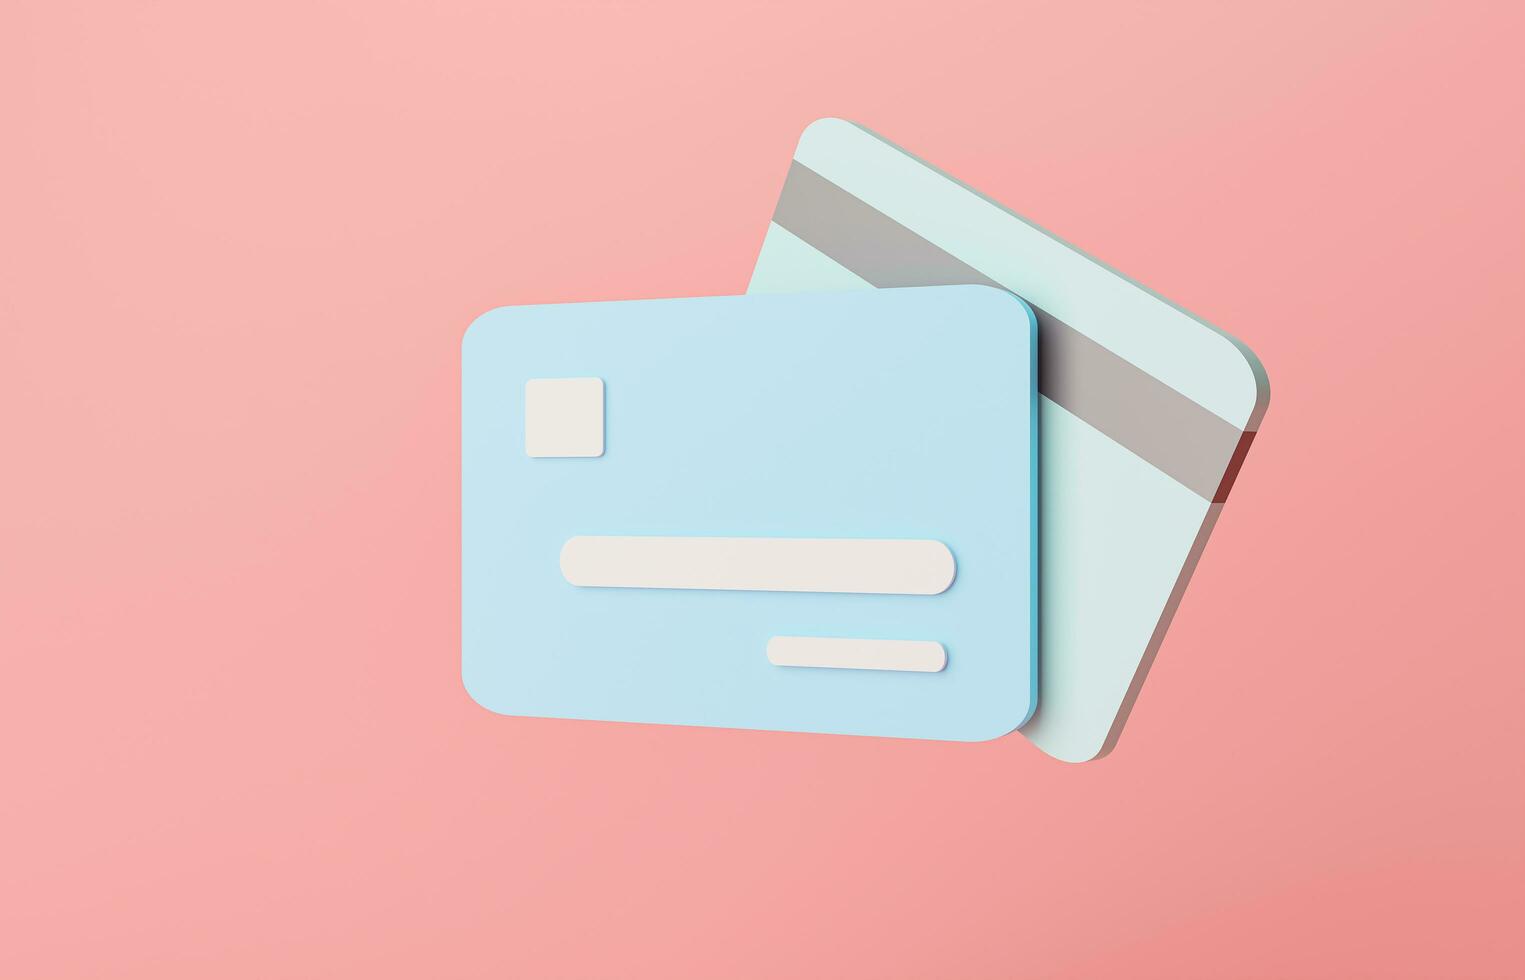 azul crédito tarjeta mínimo en rosado pastel antecedentes negocio finanzas concepto. dibujos animados estilo crédito tarjeta mínimo. pago y bancario concepto. bancario Finanzas transacción pago en línea 3d representación foto